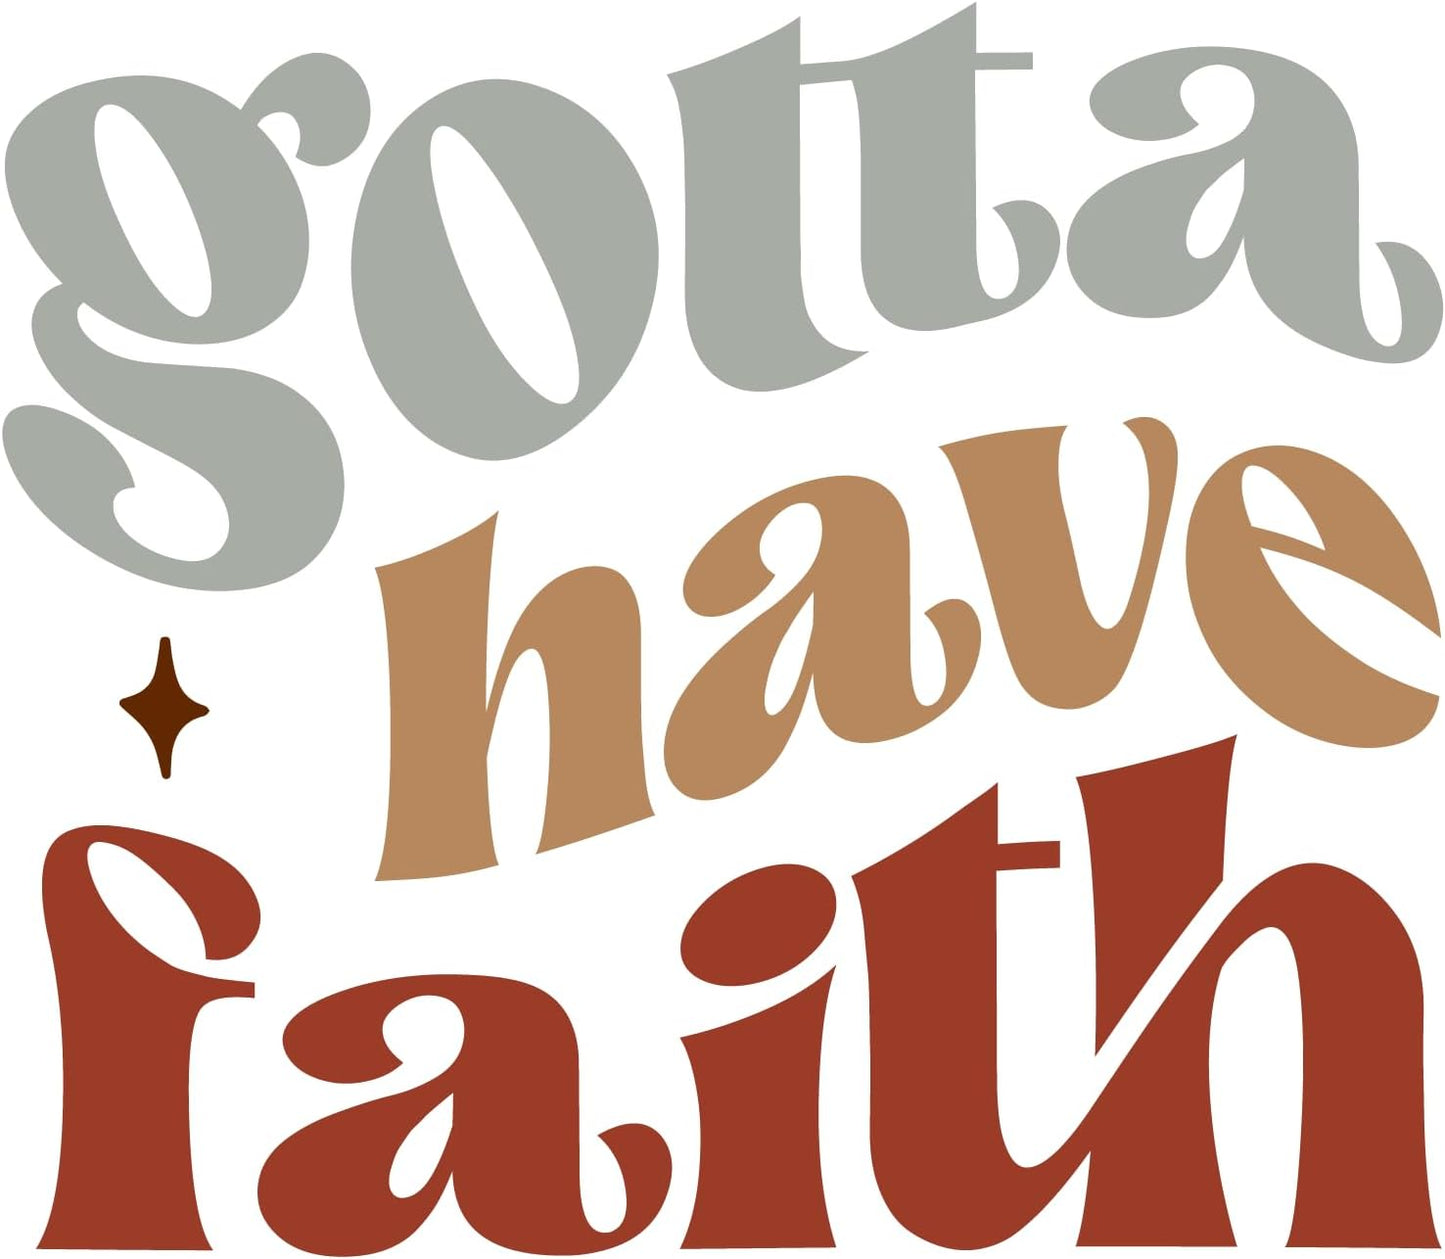 Inspirational Quote "Gotta Have Faith, Sticker Gift" Motivational Sticker Vinyl Decal Motivation Stickers- 5" Vinyl Sticker Waterproof